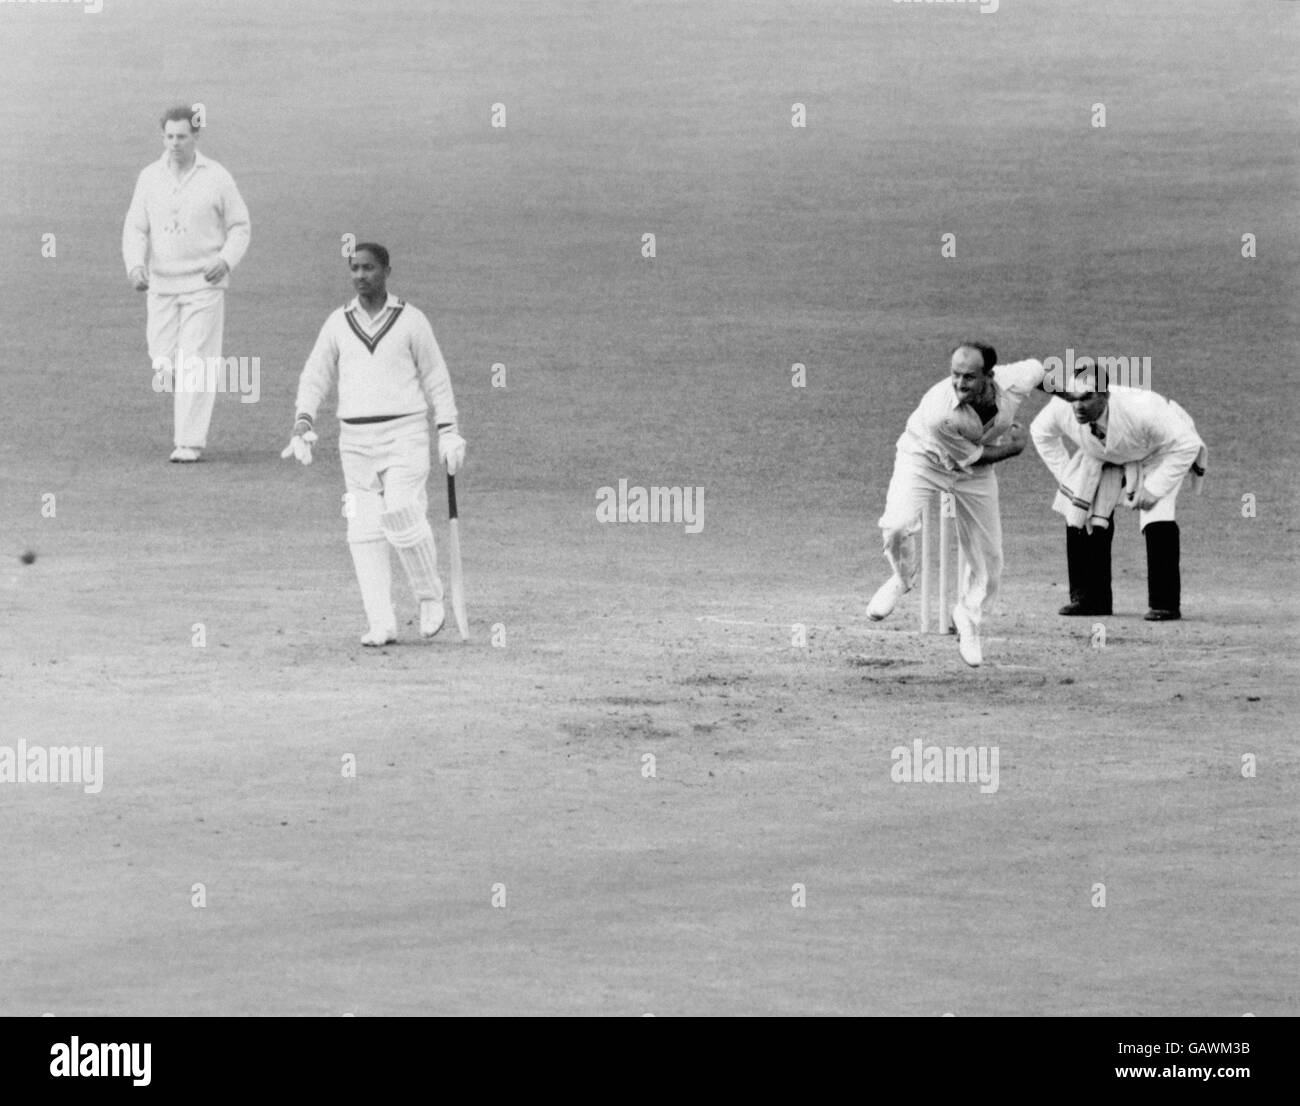 Cricket - Marylebone Cricket Club / West Indies - primo giorno. Frank Worrell (second l) di West Indies guarda come Frank Tyson (second r) di MCC scagliò un'altra palla veloce Foto Stock